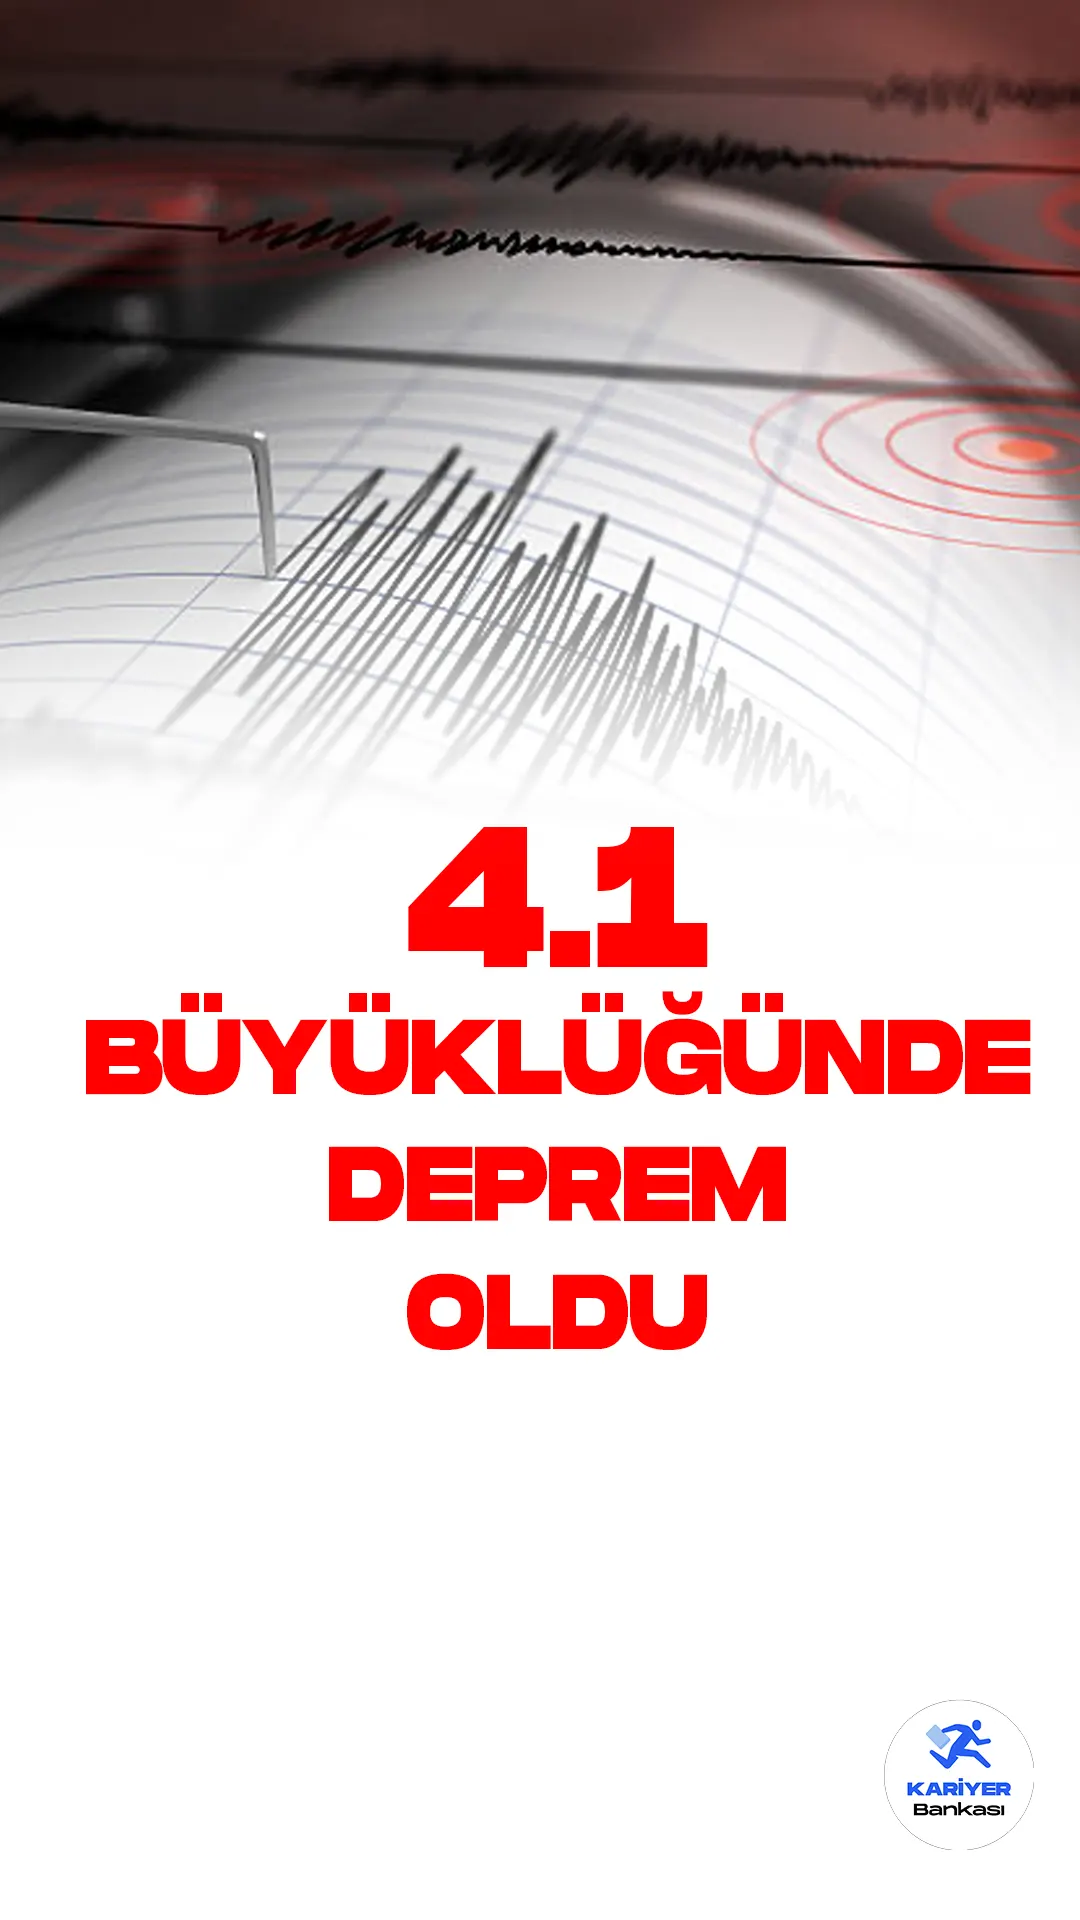 Antalya'da 4.1 Büyüklüğünde Deprem Oldu.İçişleri Bakanlığı Afet ve Acil Durum Yönetimi Başkanlığı tarafından yayımlanan bilgiye göre Antalya'nın Döşemealtı ilçesinde 4.1 büyüklüğünde deprem meydana geldi.